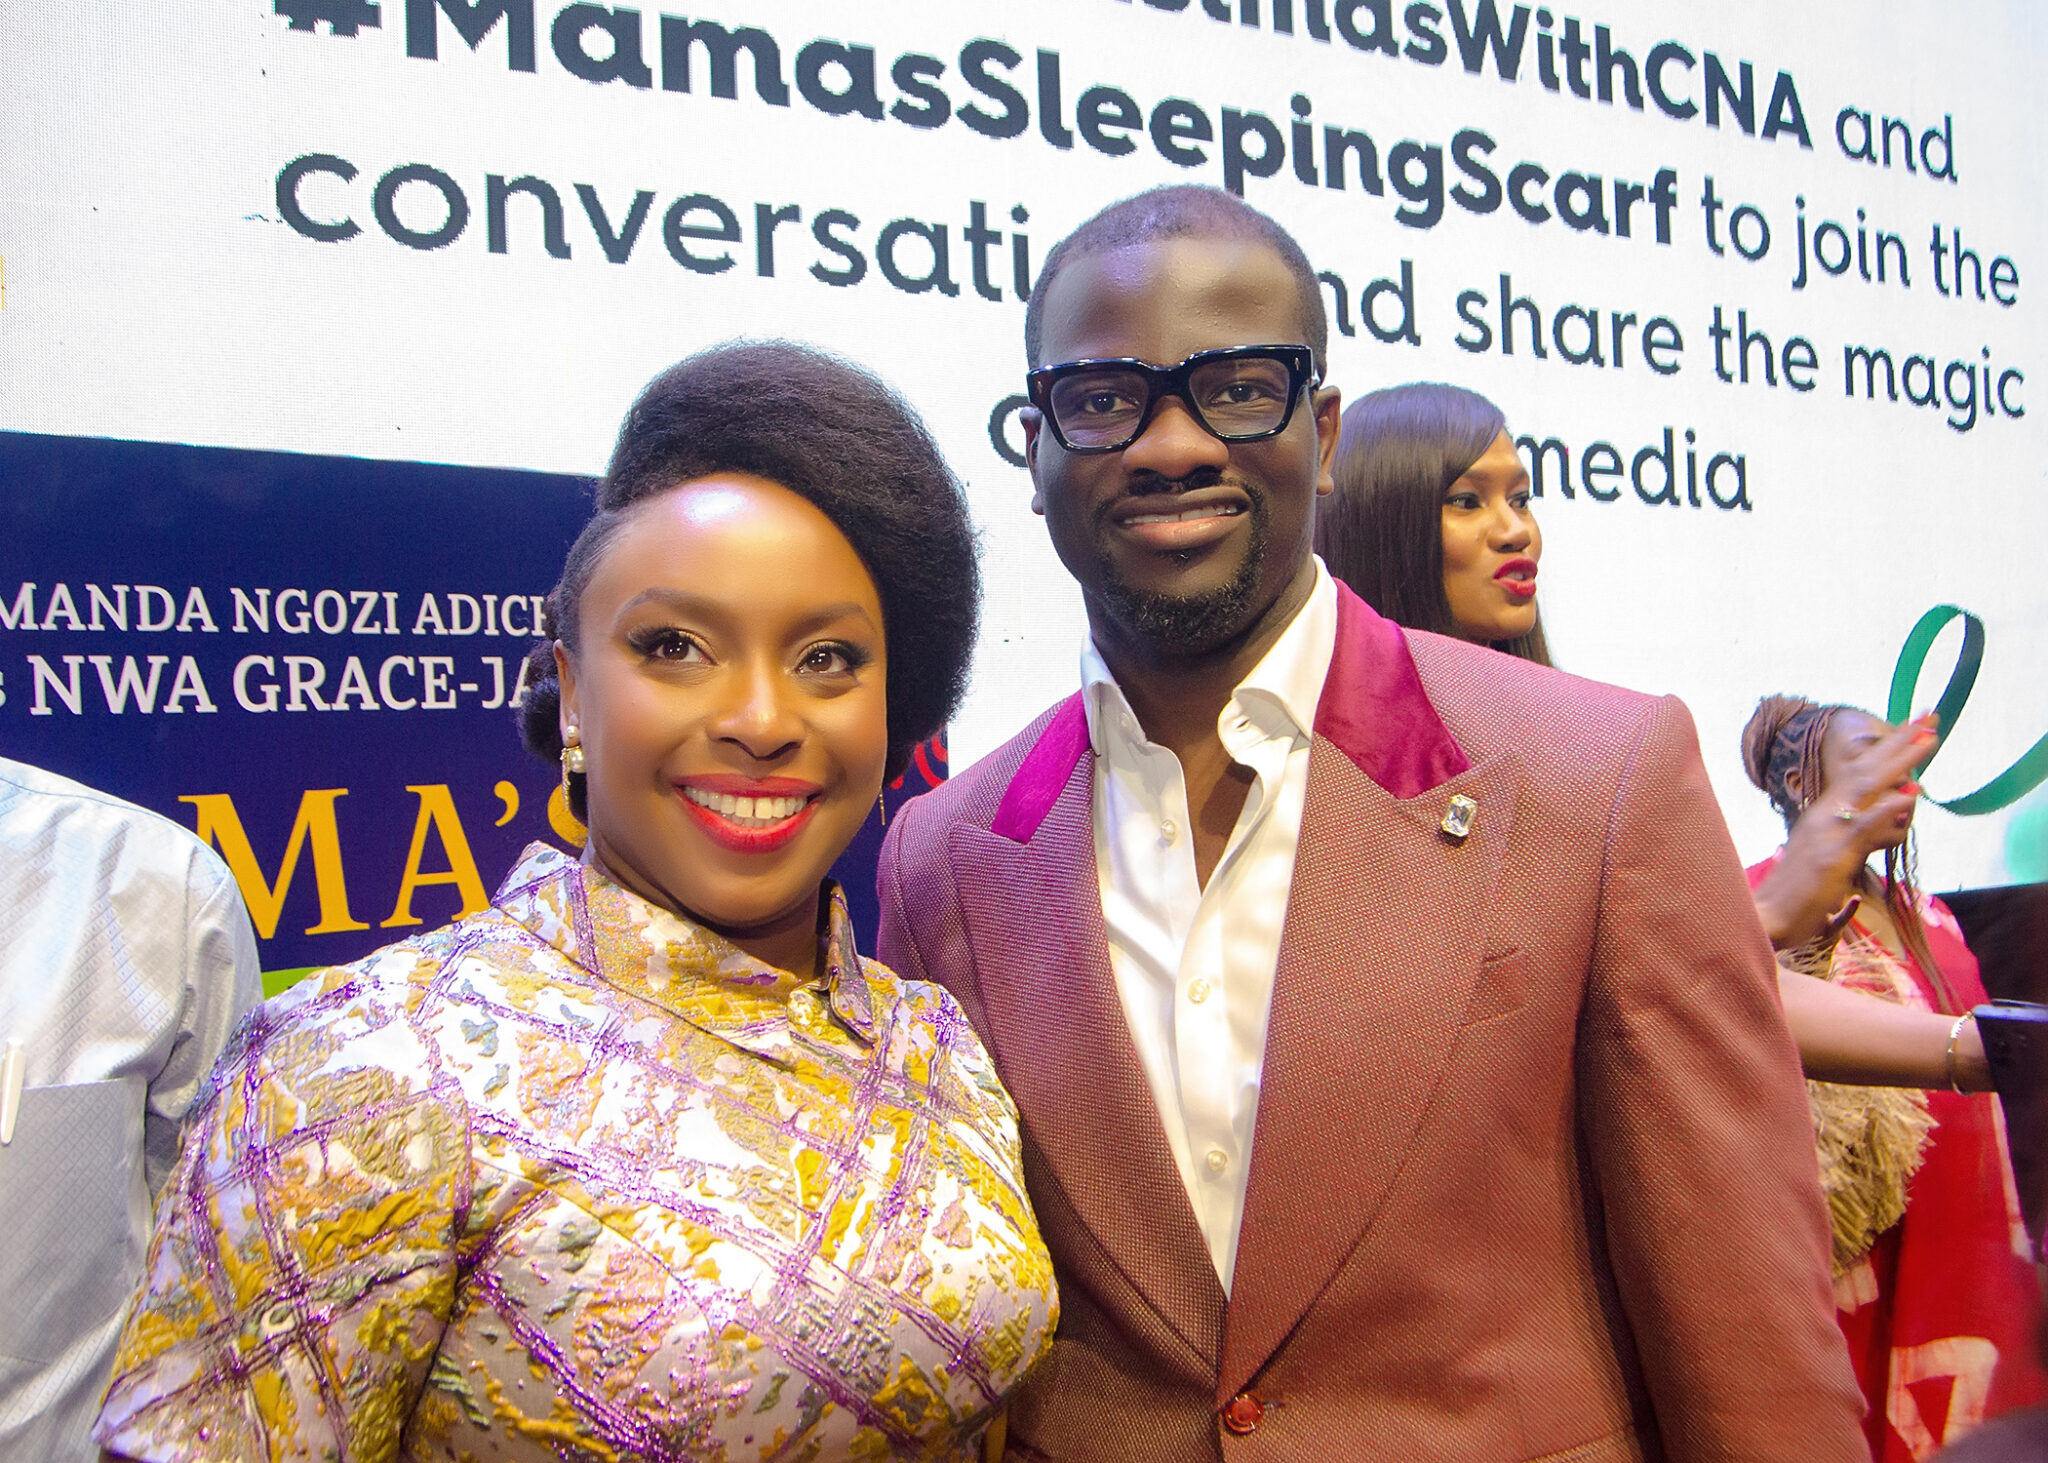 Chimamanda Adichie Introduces "Mama’s Sleeping Scarf" | Fab.ng